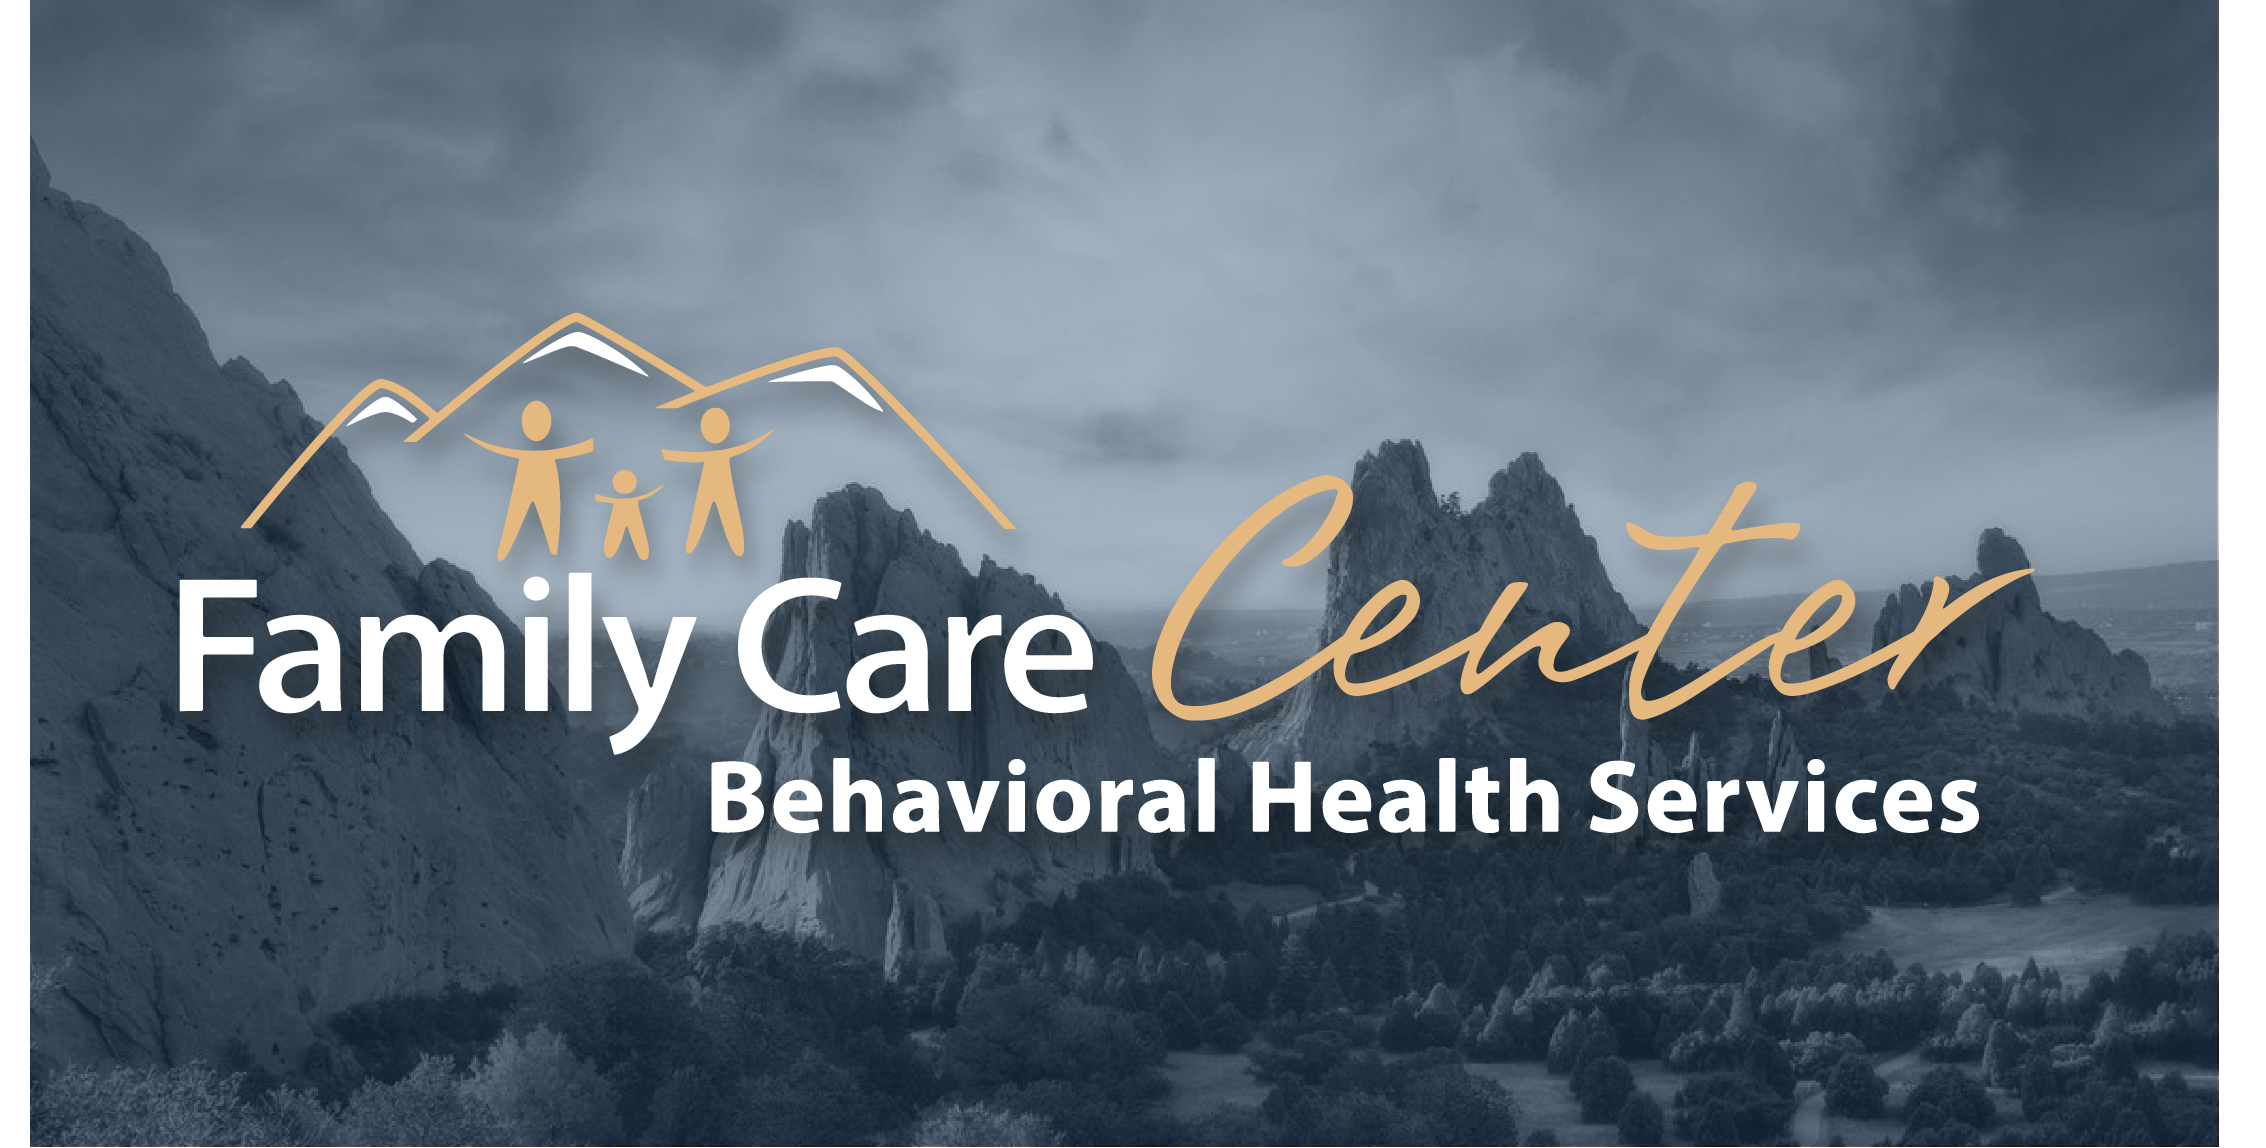 Family Care Center reviews | 2860 S. Circle Dr. - Colorado Springs CO